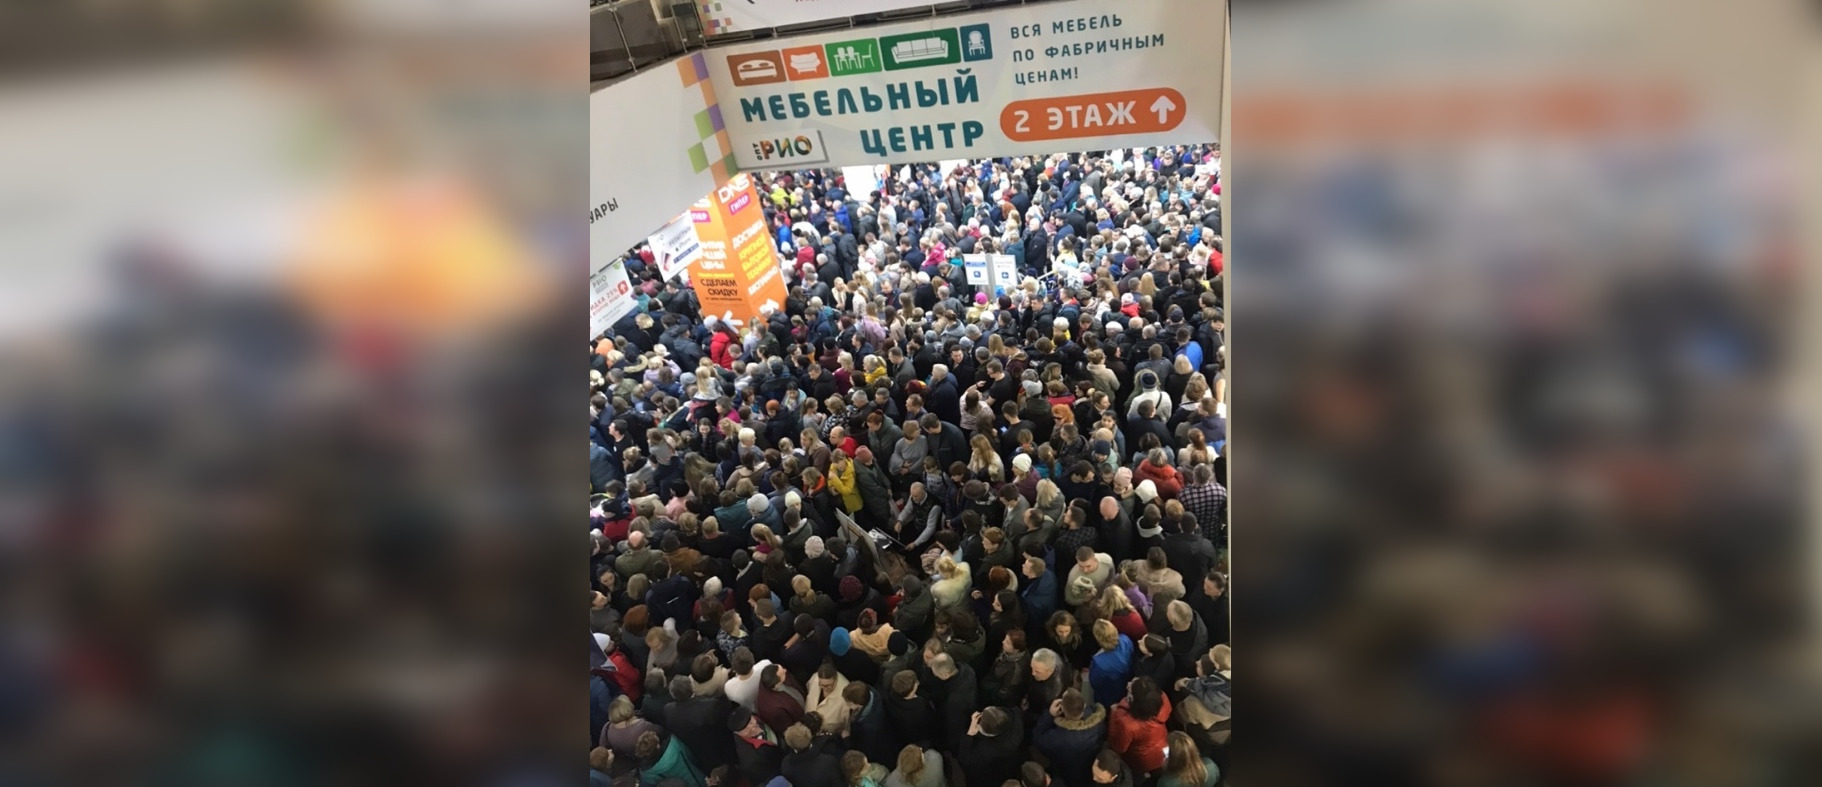 Ярославцы осудили давку в торговом центре ради смартфона